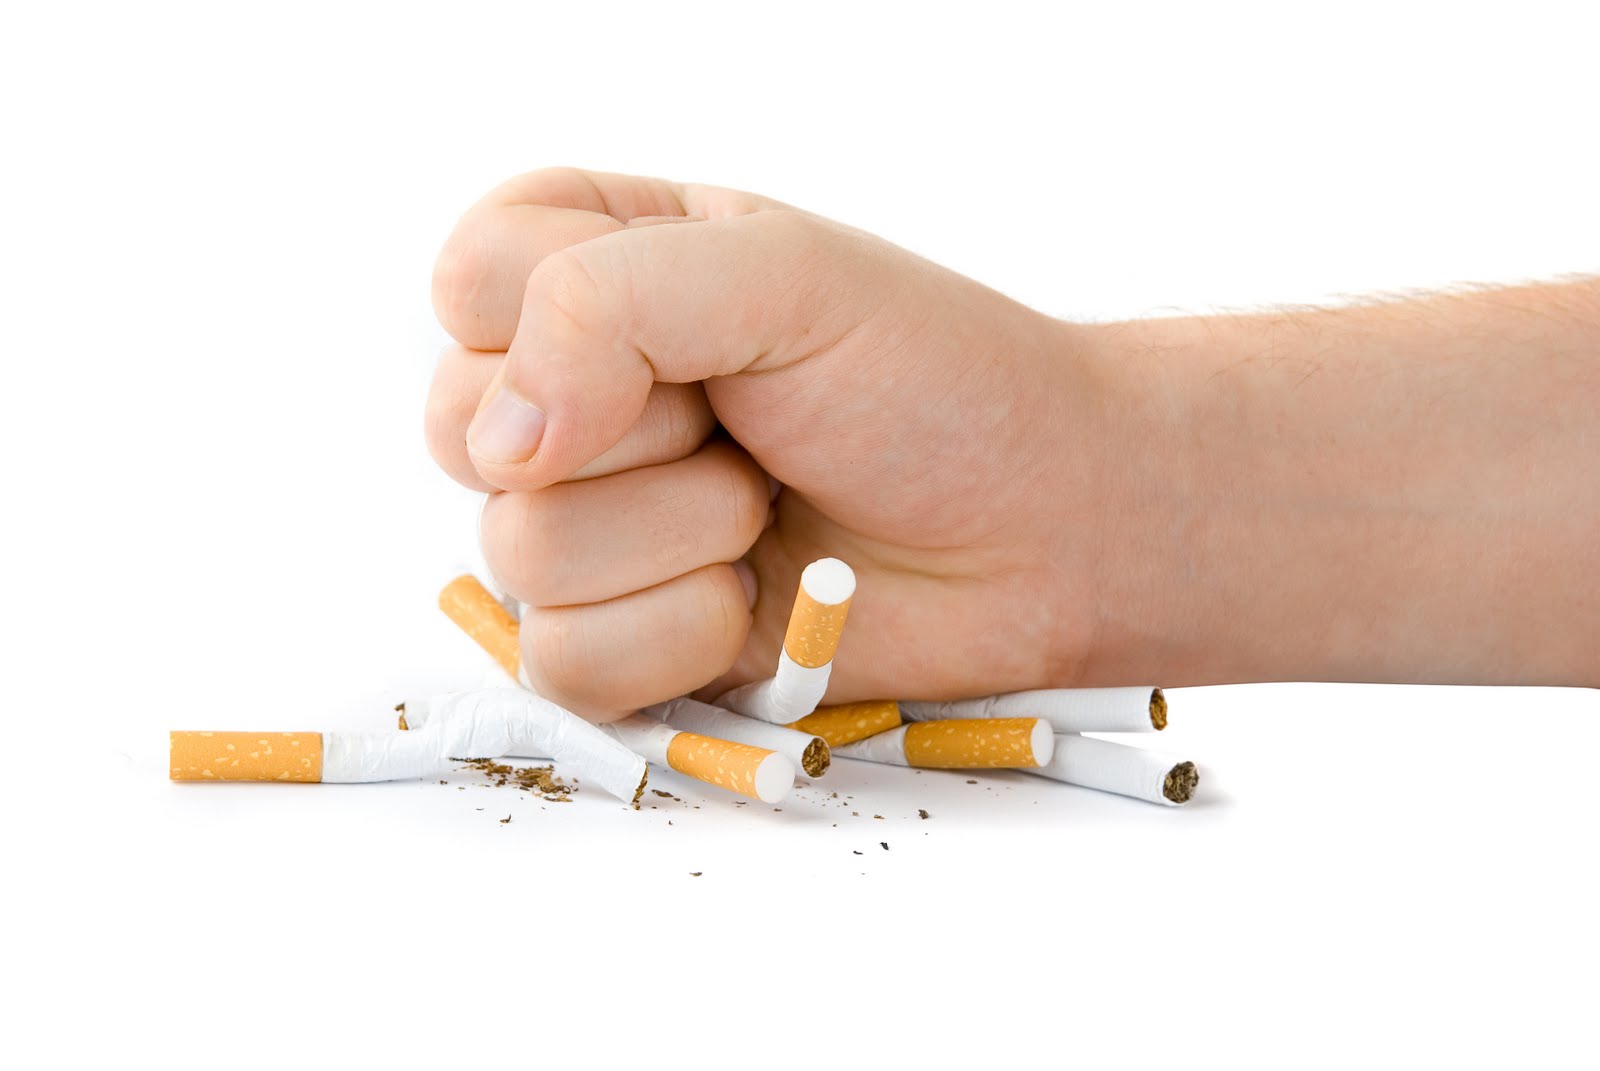 نصائح لمن يريد الإقلاع عن التدخين بسهولة!